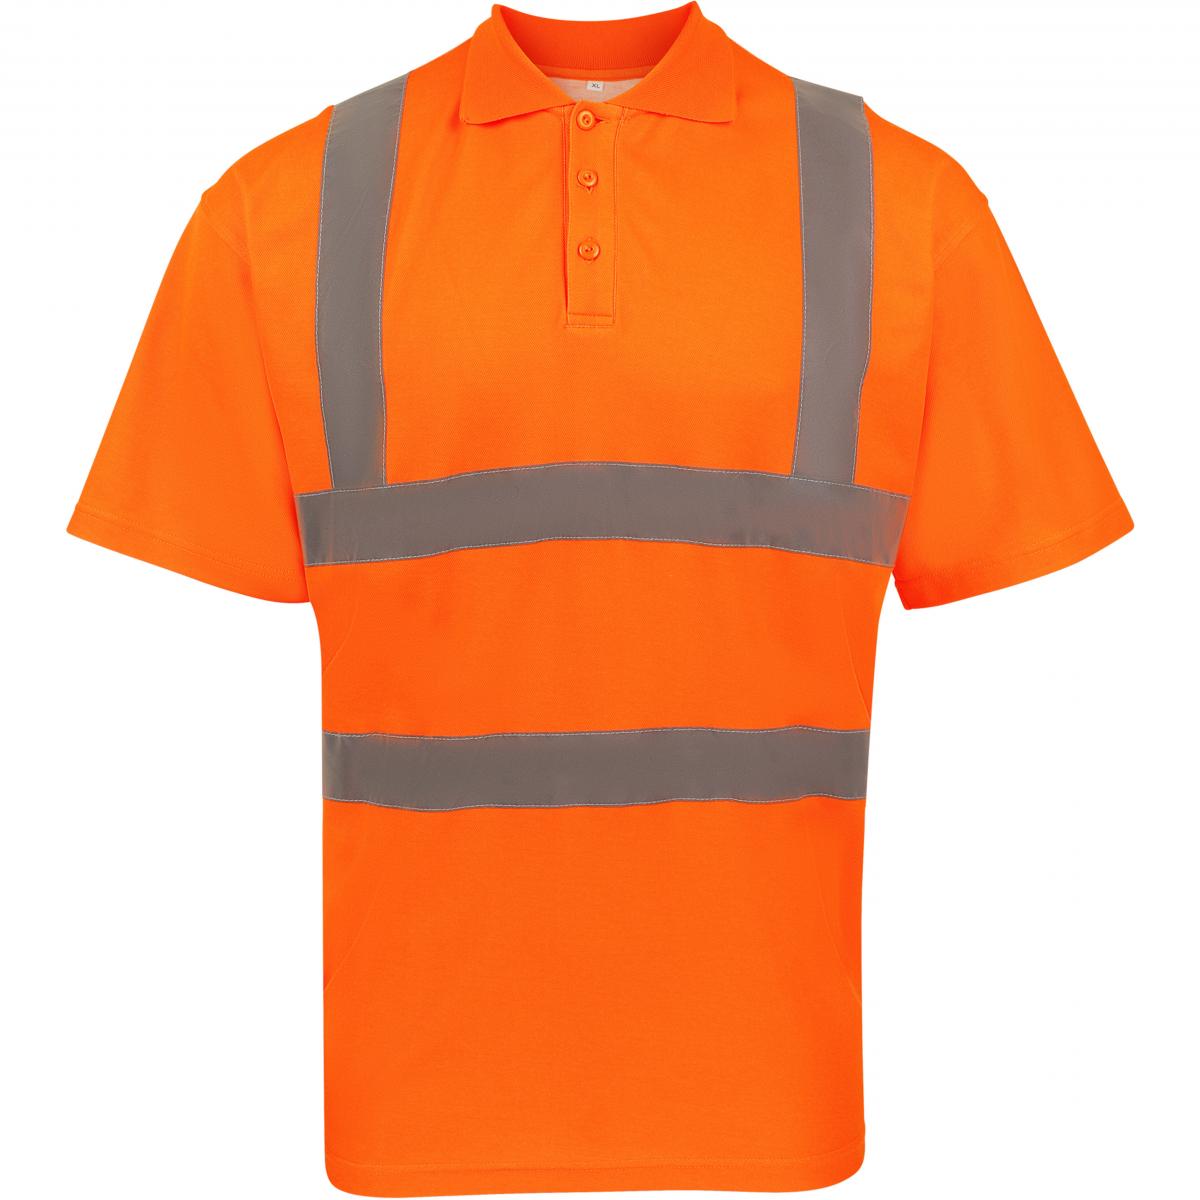 Hersteller: Korntex Herstellernummer: KXPCPOLO Artikelbezeichnung: Herren Polo Blended fabric Poloshirt Farbe: Signal Orange